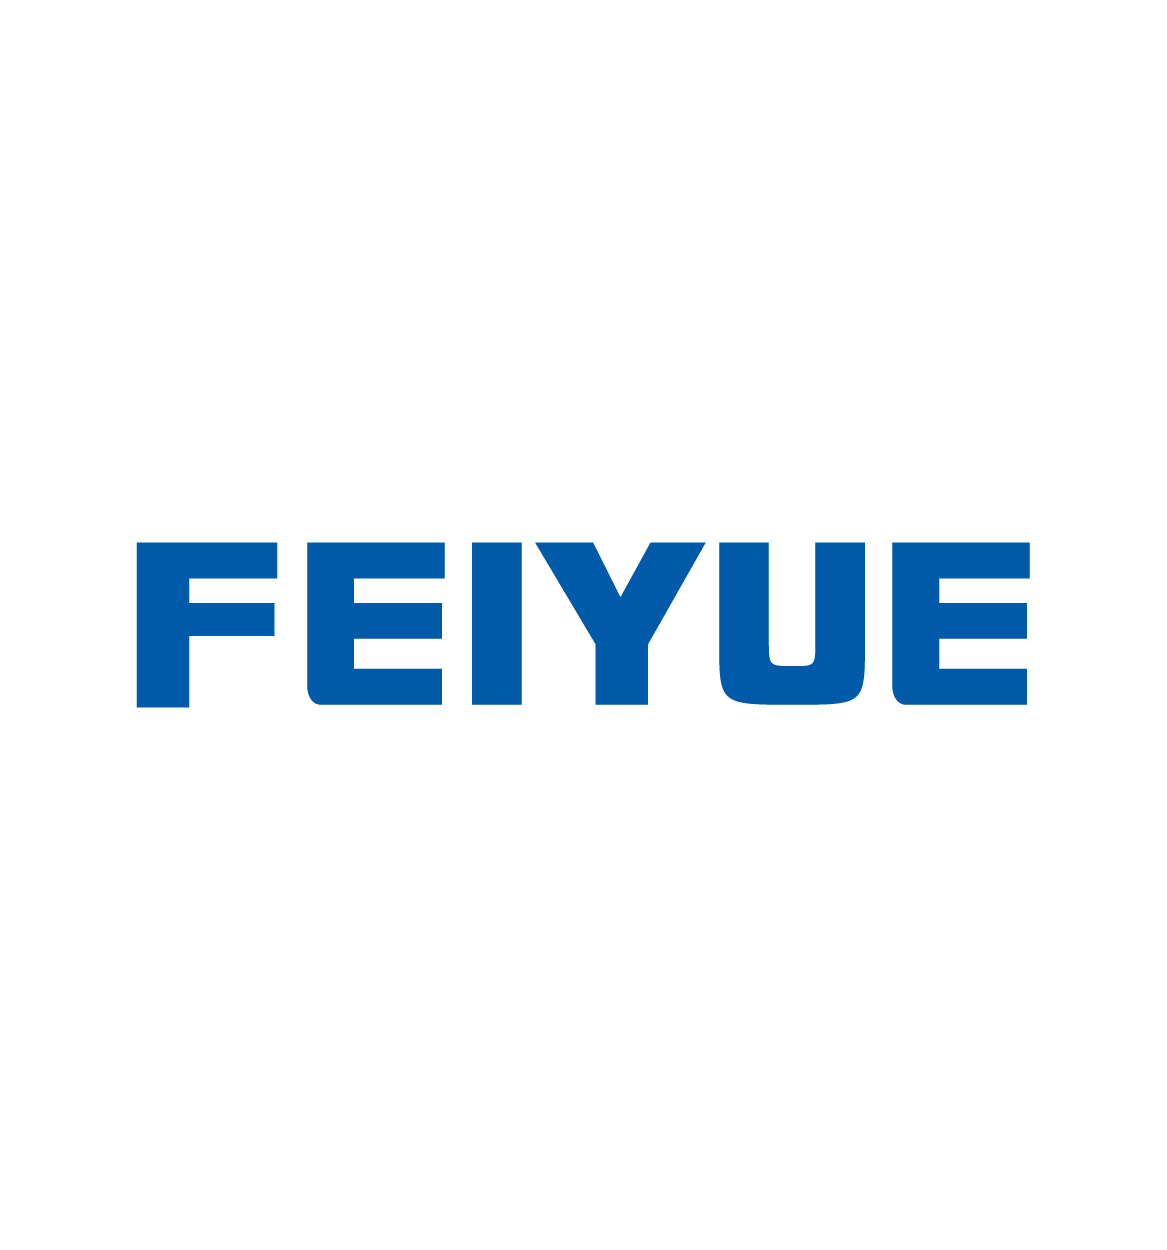 Download Feiyue Logo in SVG Vector or PNG